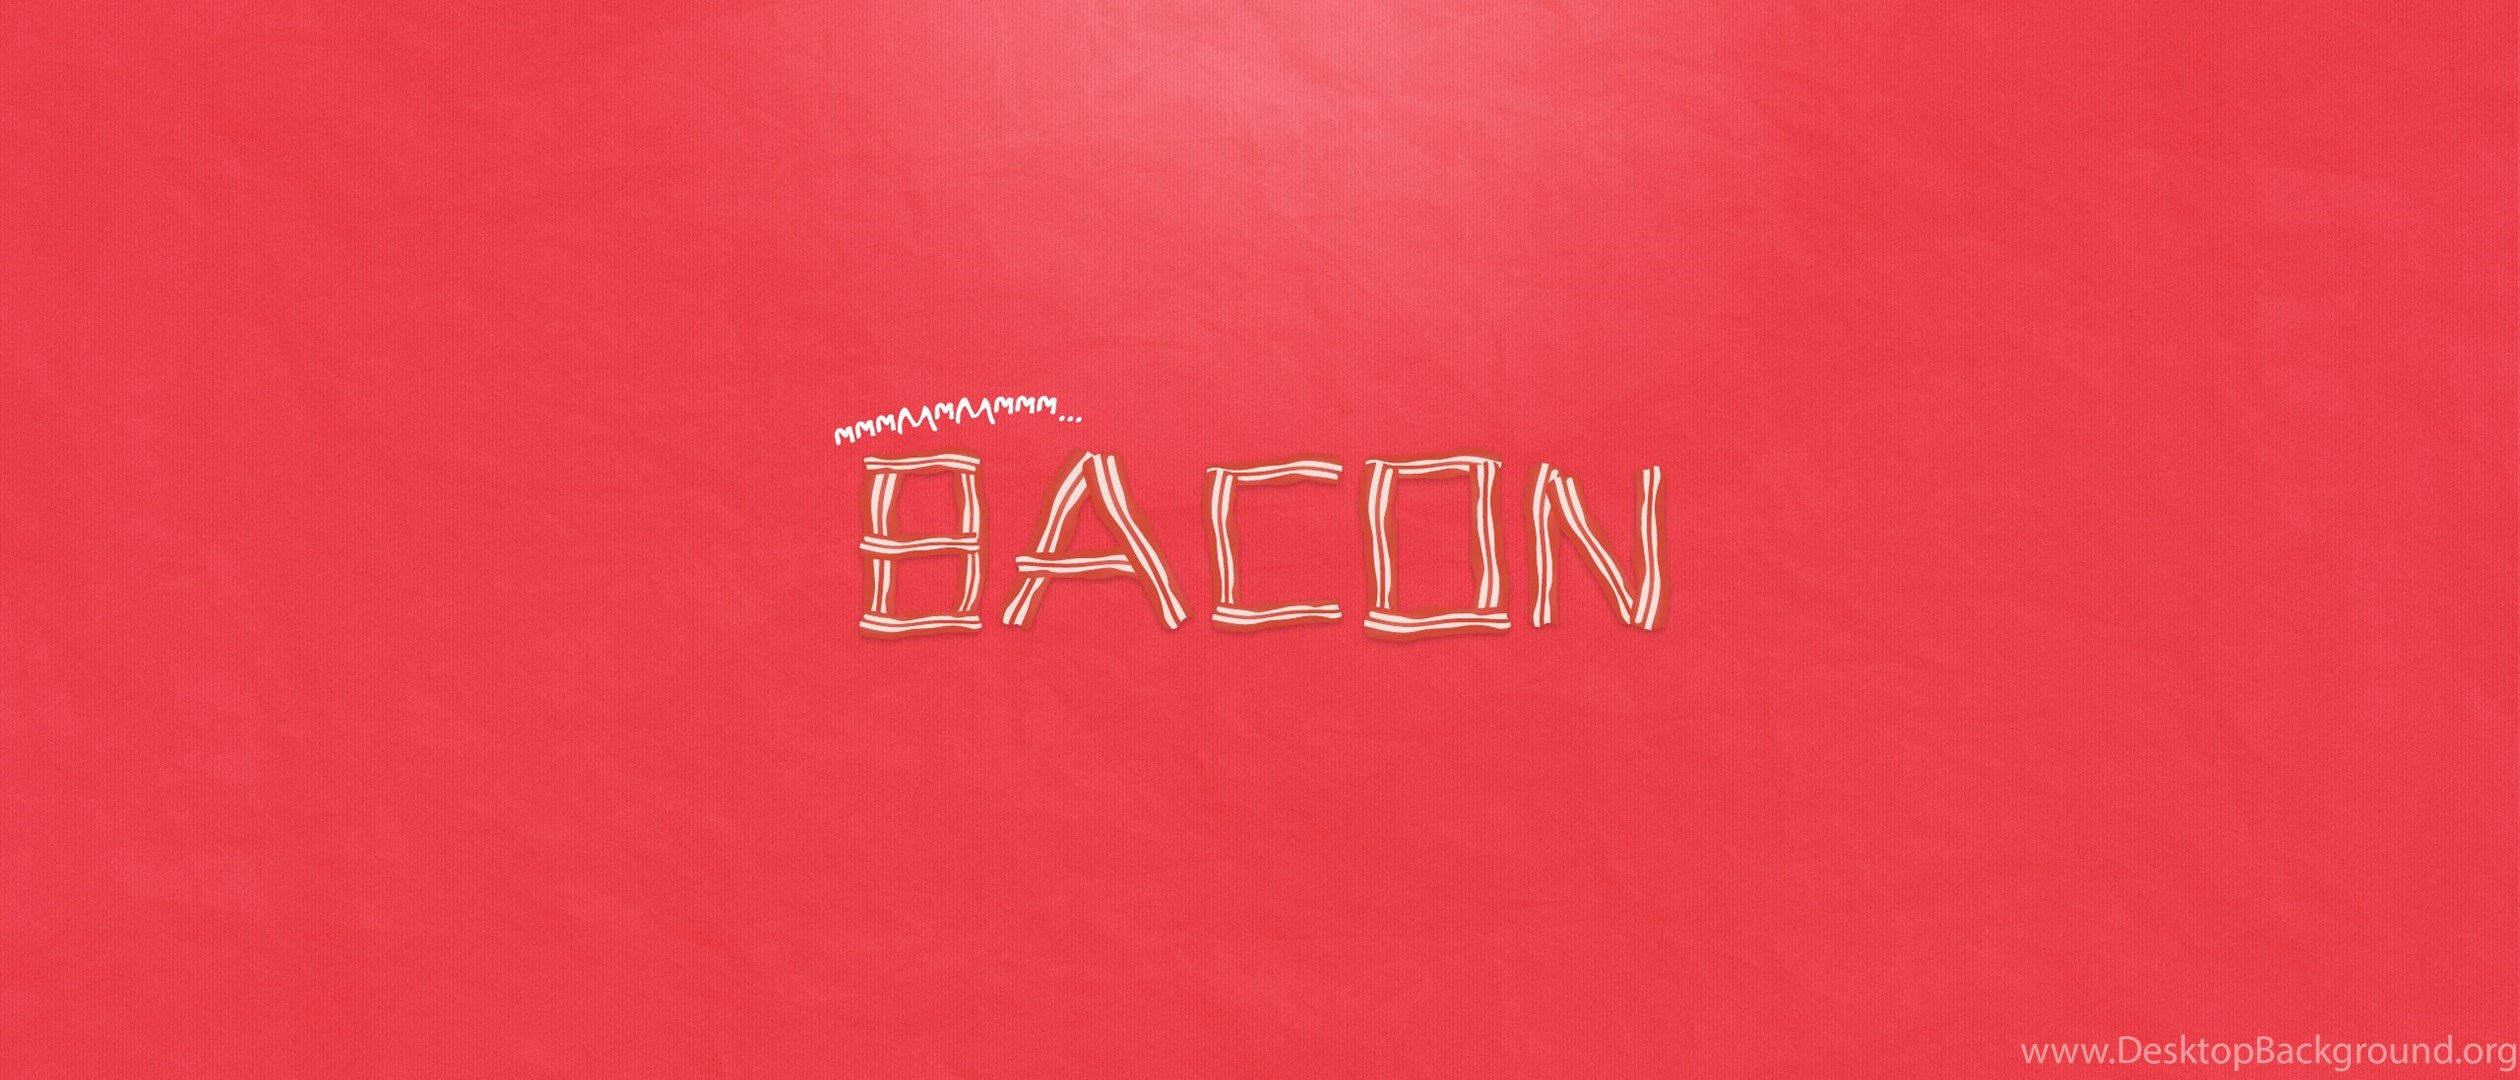 Bacon wallpaper 2560x1440 bacon wallpaper 2560x1440 bacon 2560x1440.jpg